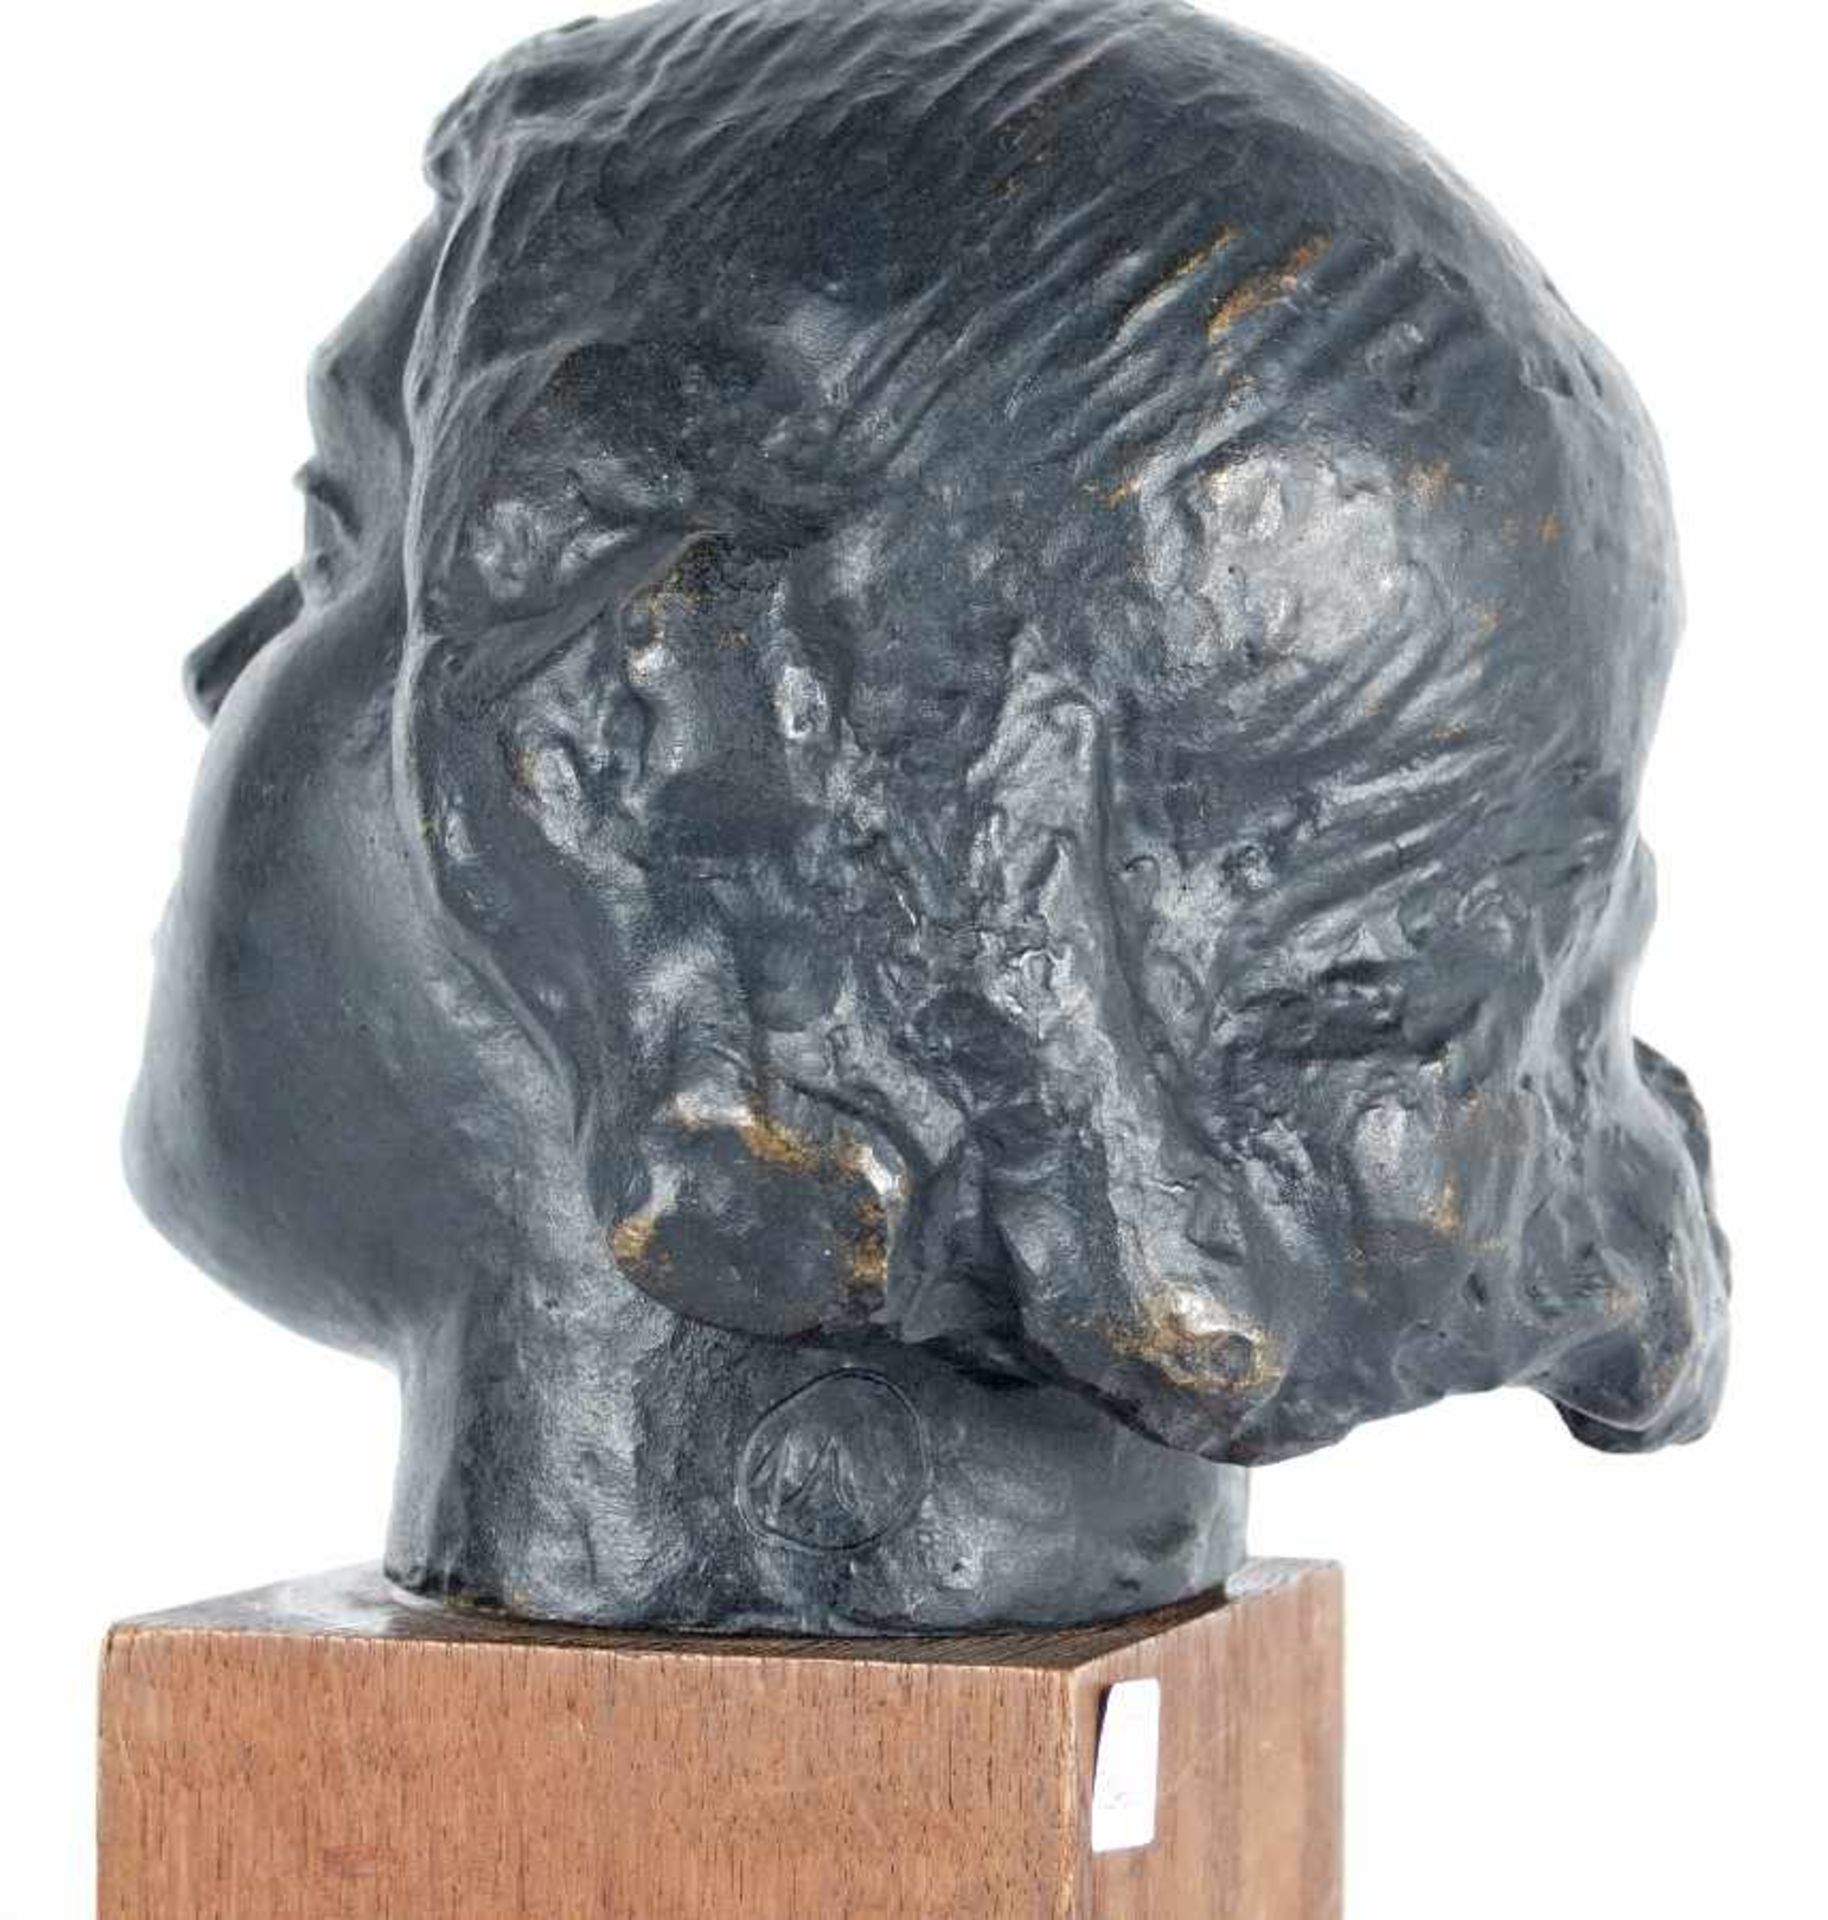 Umkreis Aristide Maillol Mädchenkopf Bronze; H 23 cm, B 20 cm, T 23 cm, Monogramm hinten links " - Bild 5 aus 5